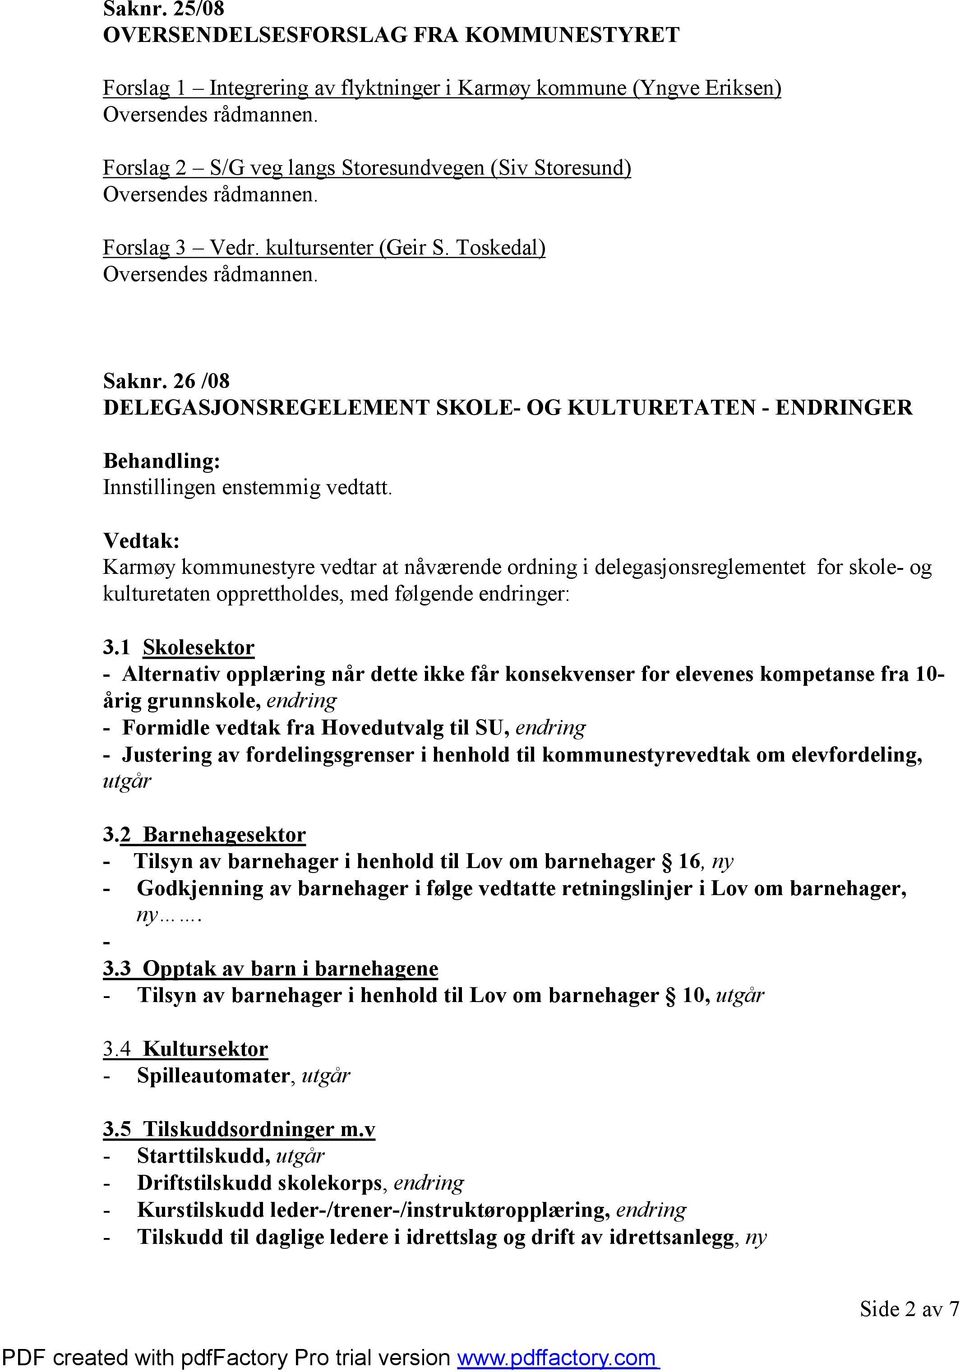 26 /08 DELEGASJONSREGELEMENT SKOLE- OG KULTURETATEN - ENDRINGER Karmøy kommunestyre vedtar at nåværende ordning i delegasjonsreglementet for skole- og kulturetaten opprettholdes, med følgende